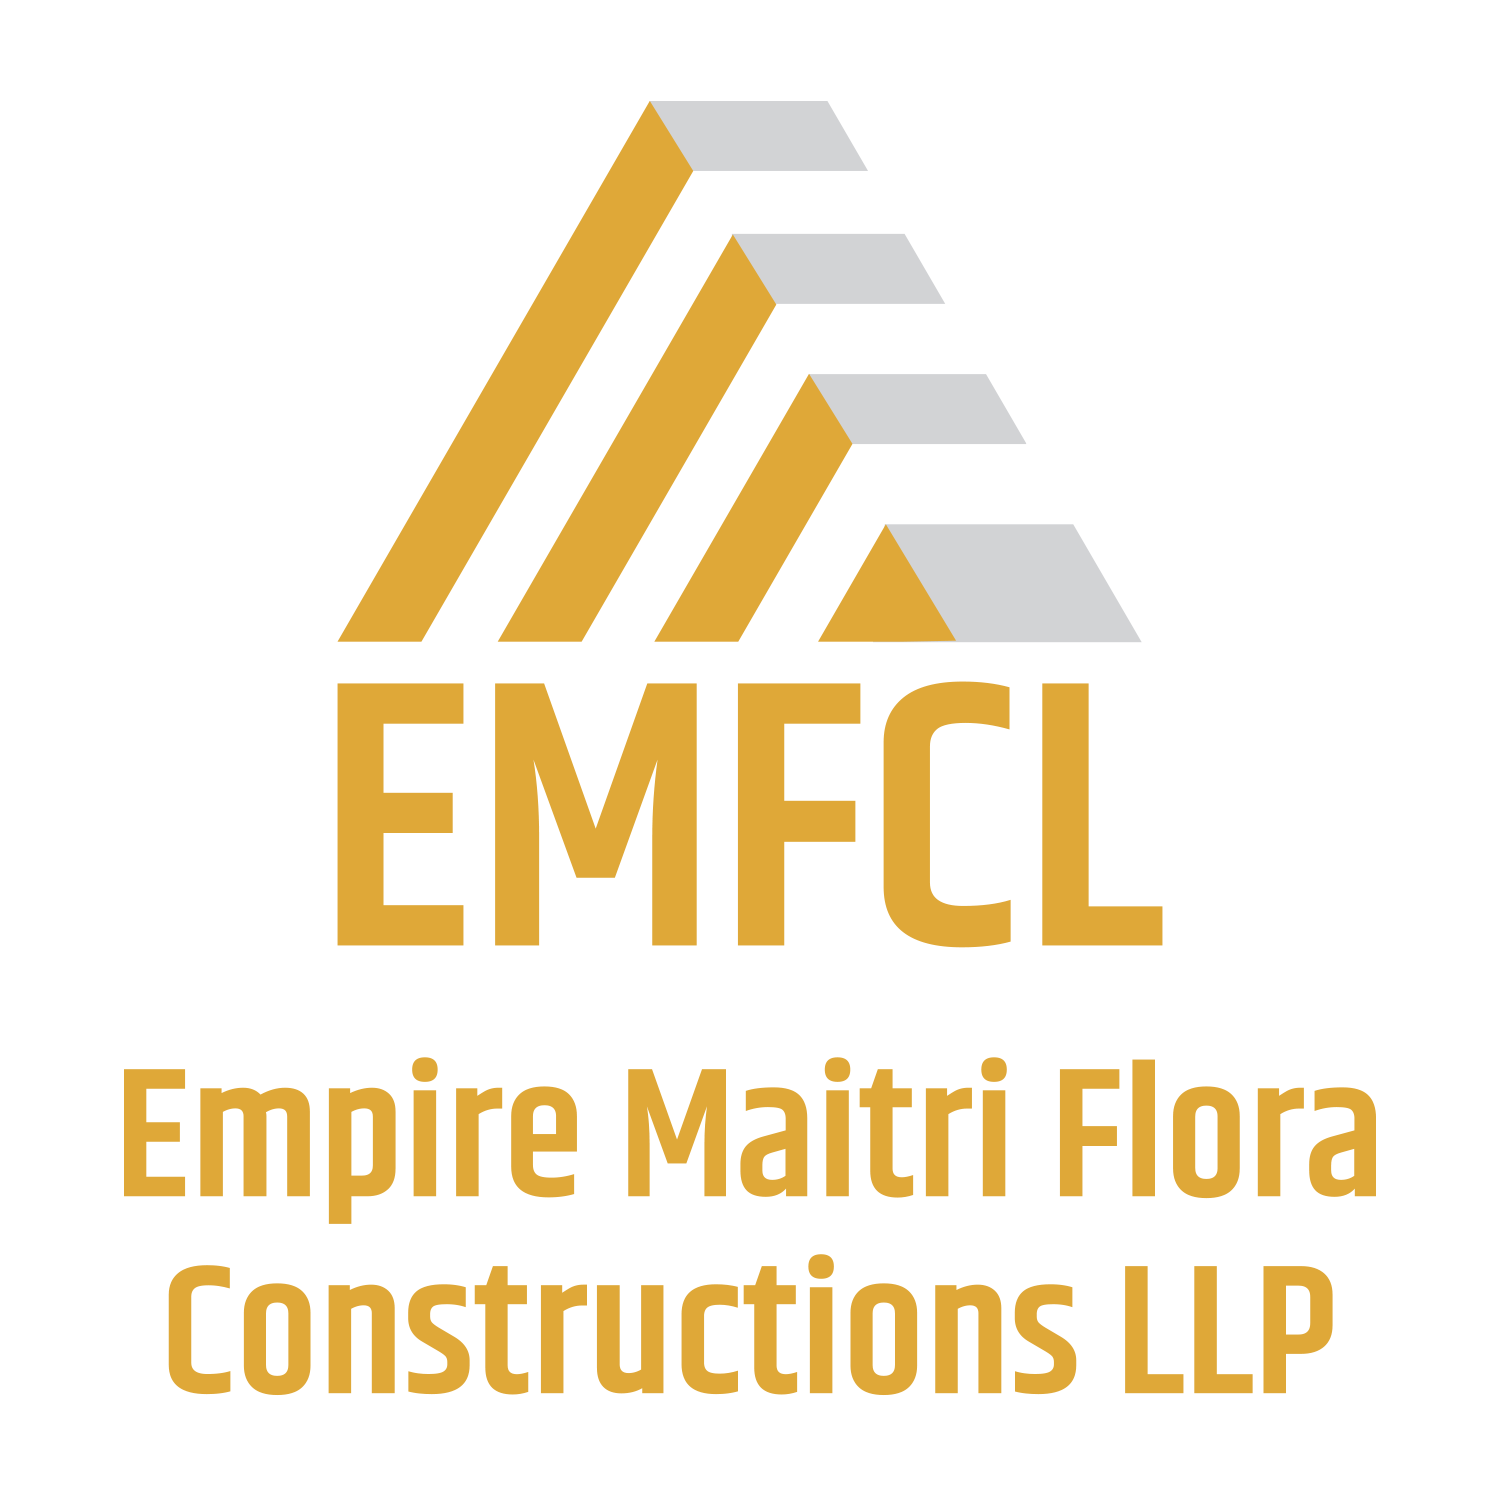 EMFCL Group